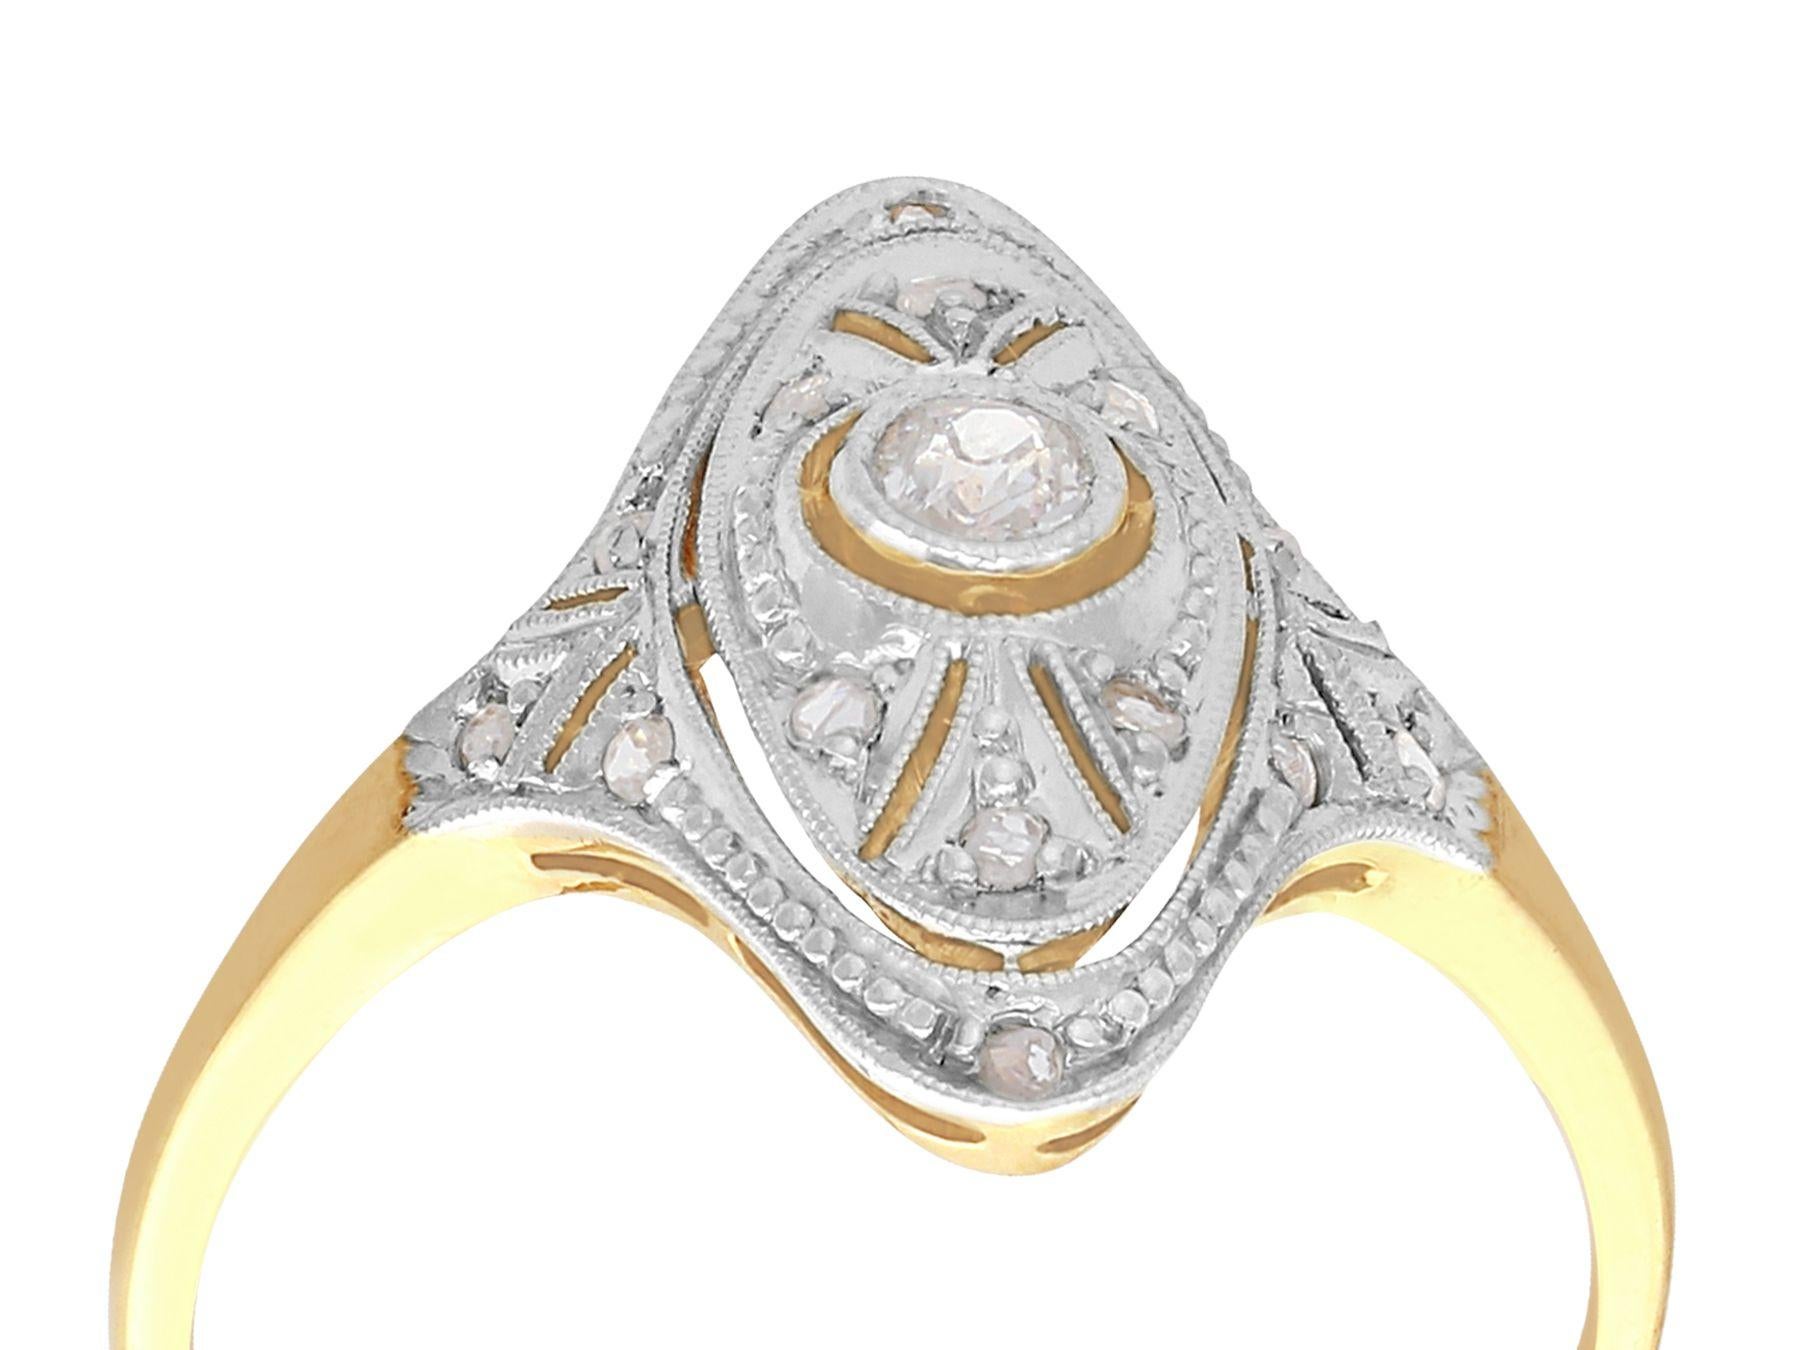 Ein beeindruckender Marquise-Ring mit 0,12 Karat Diamant und 14 Karat Gelbgold und 14 Karat Weißgold; Teil unserer vielfältigen Sammlungen von antikem Schmuck und Nachlassschmuck.

Dieser feine und beeindruckende antike Diamantring aus den 1920er